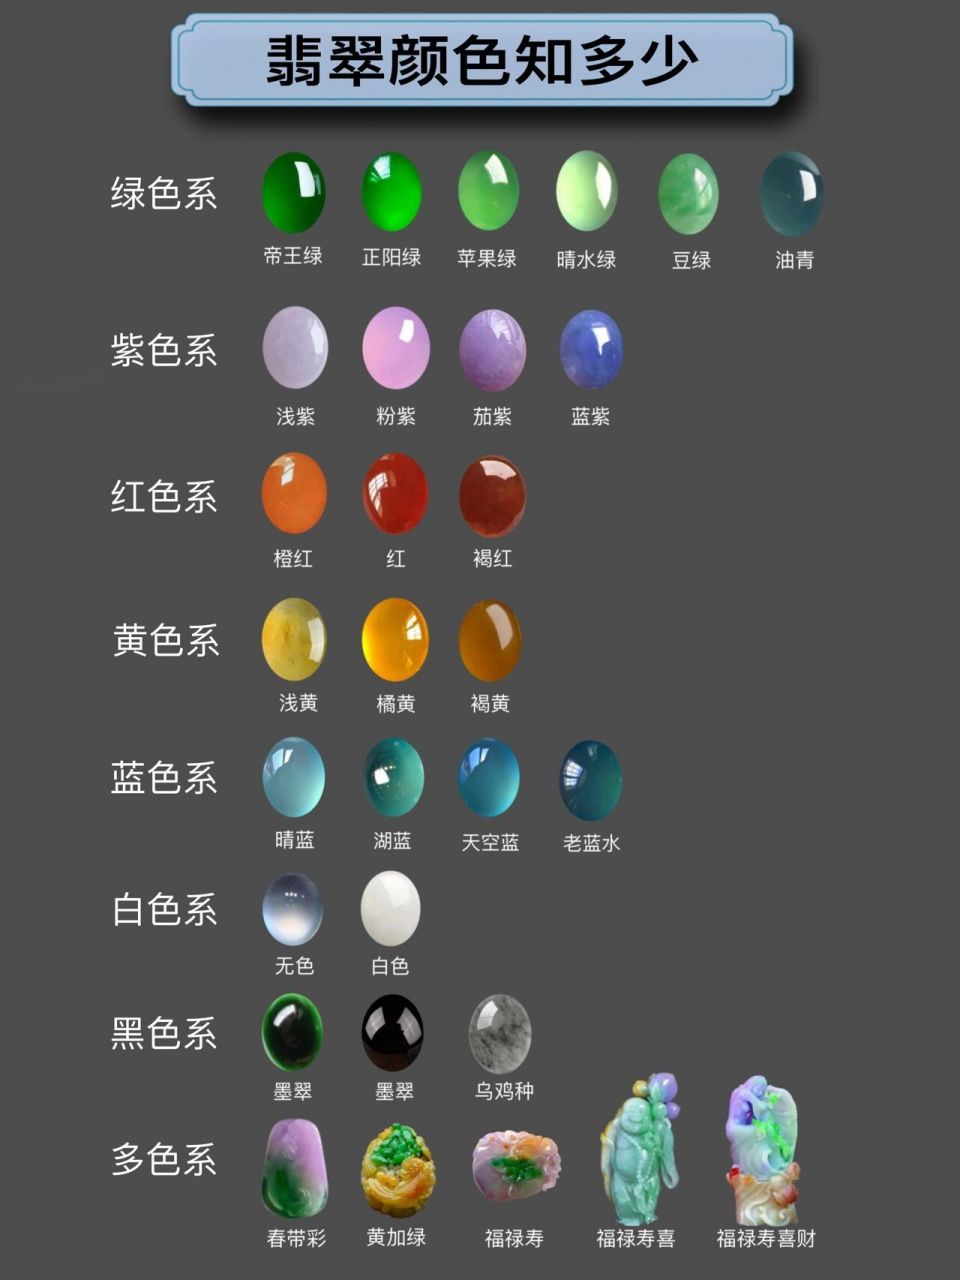 知分享4一张图教你简单看懂翡翠颜色分类 翡翠是颜色最为丰富玉石